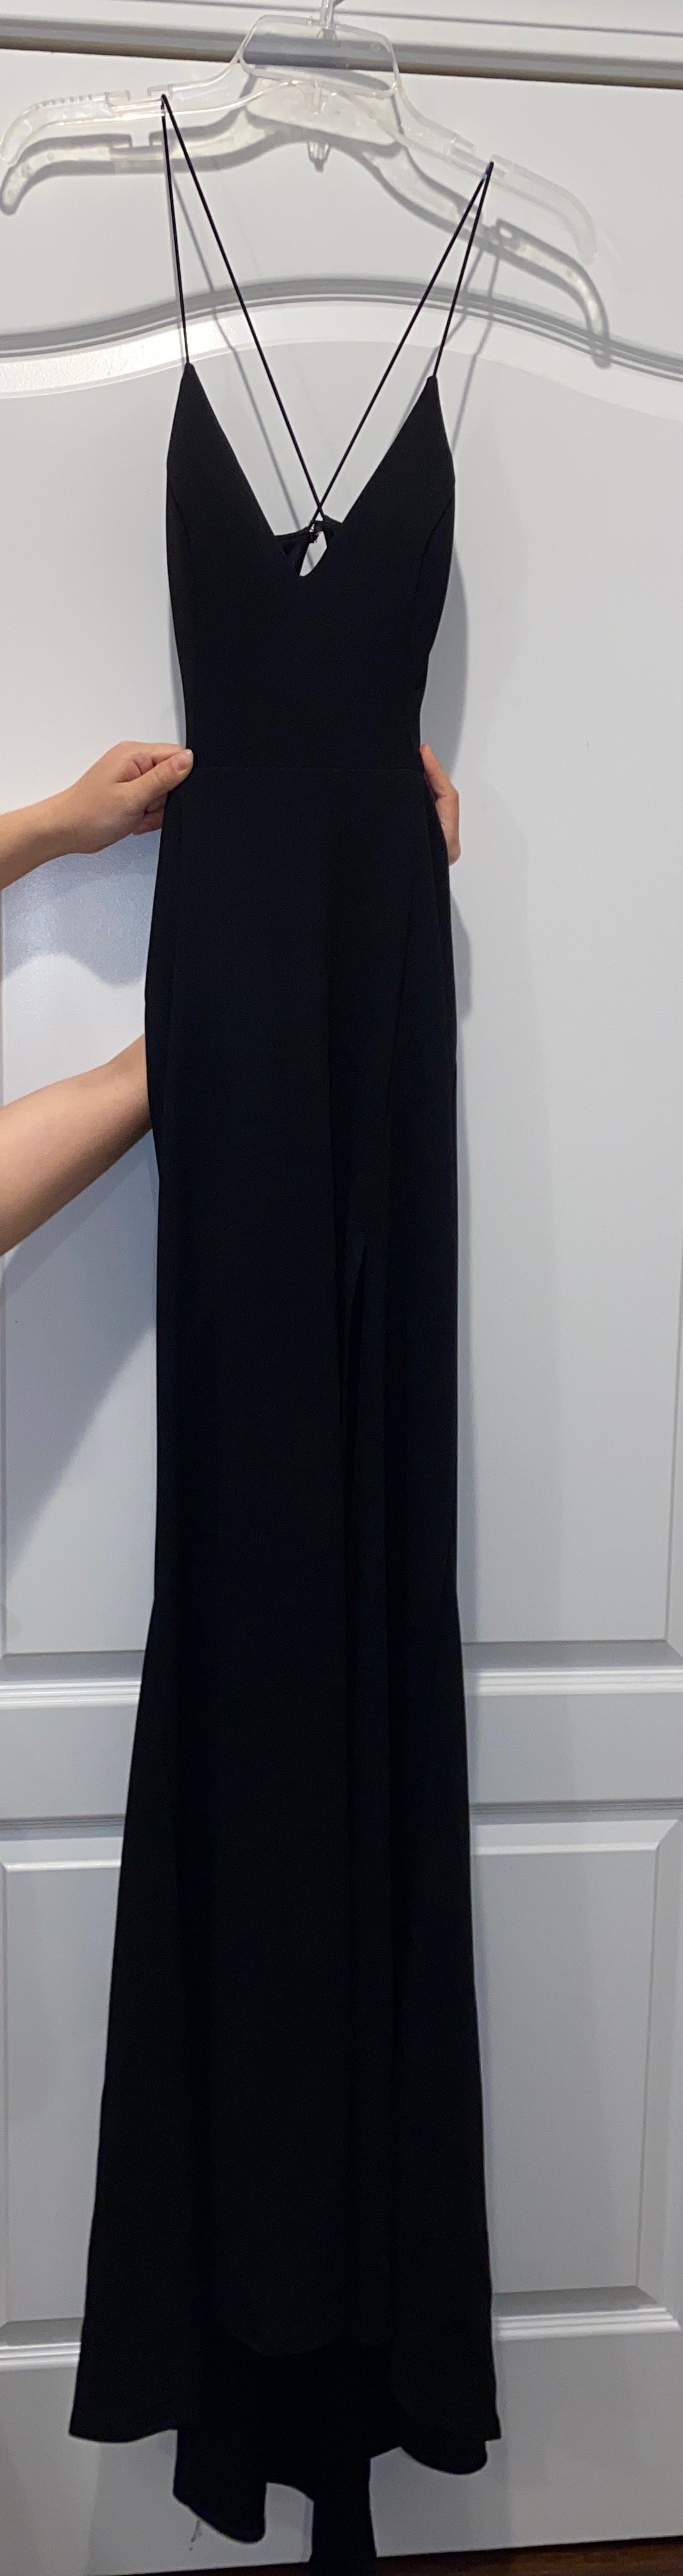 Windsor Size 4 Prom Black Side Slit Dress on Queenly